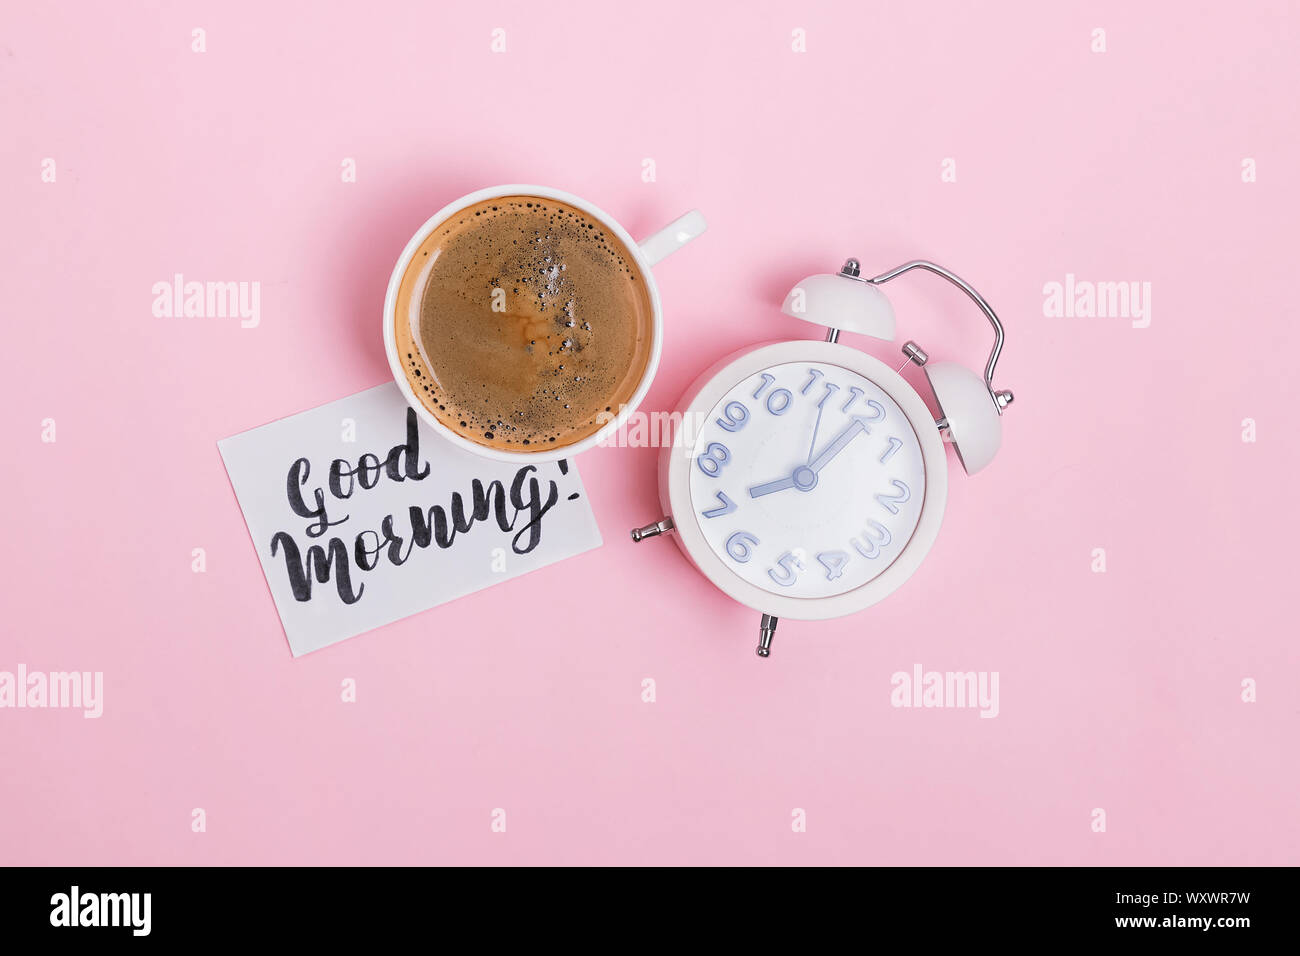 Analog sveglia, una tazza di caffè e nota con testo Buongiorno su sfondo rosa. Inizio del giorno concetto. Foto Stock